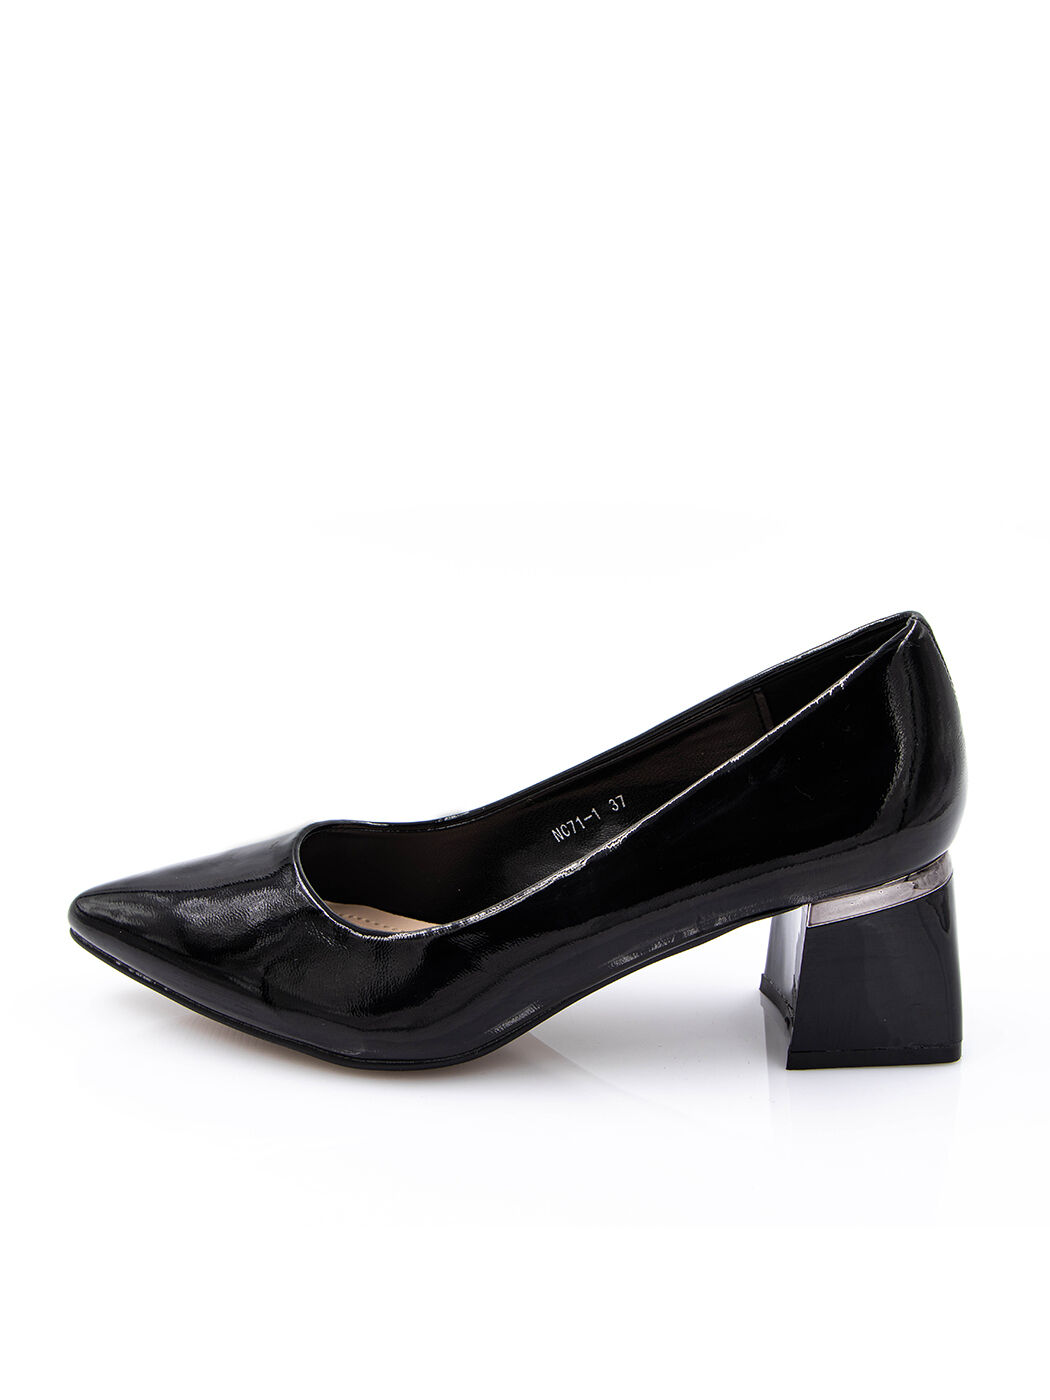 Туфли женские черные искусственный лак каблук устойчивый демисезон от производителя 1M